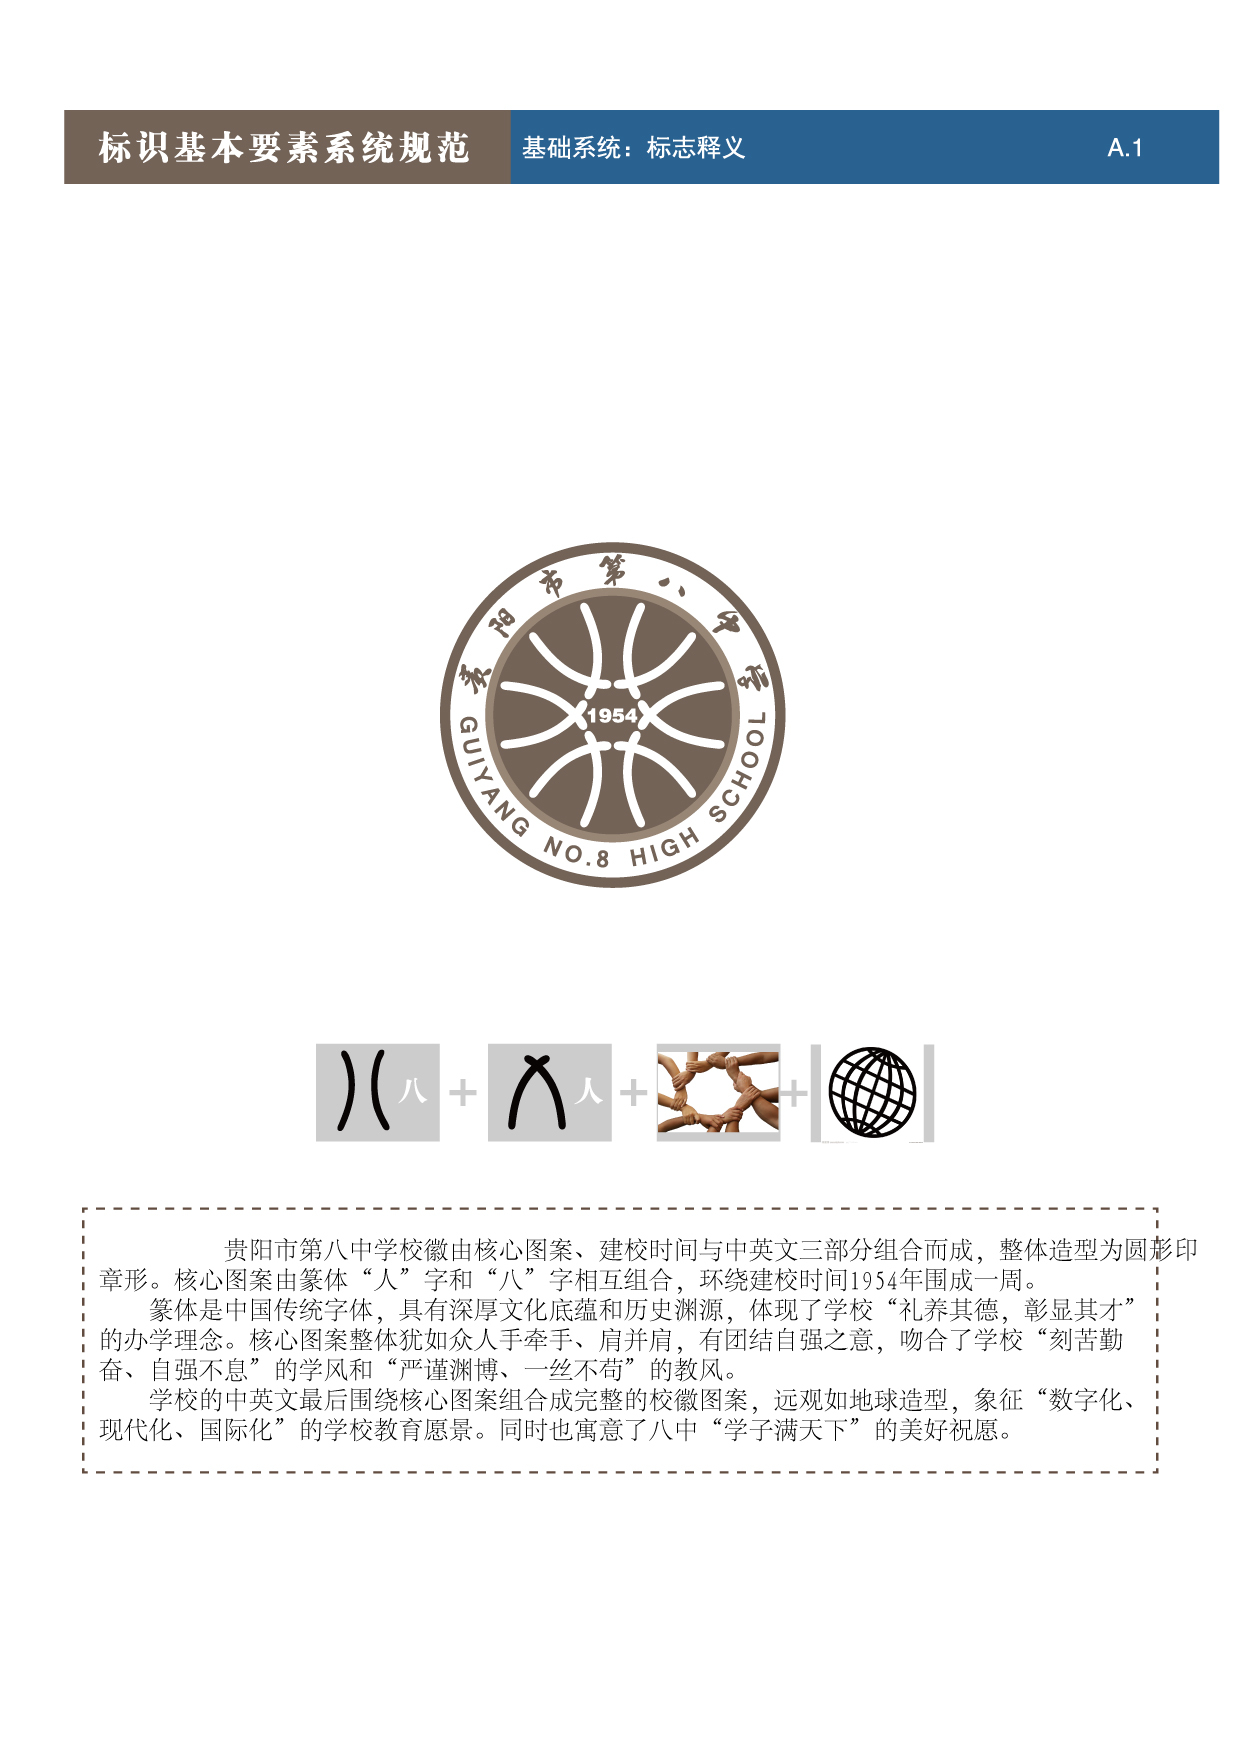 貴陽第八中學Logo、VIS設計圖8